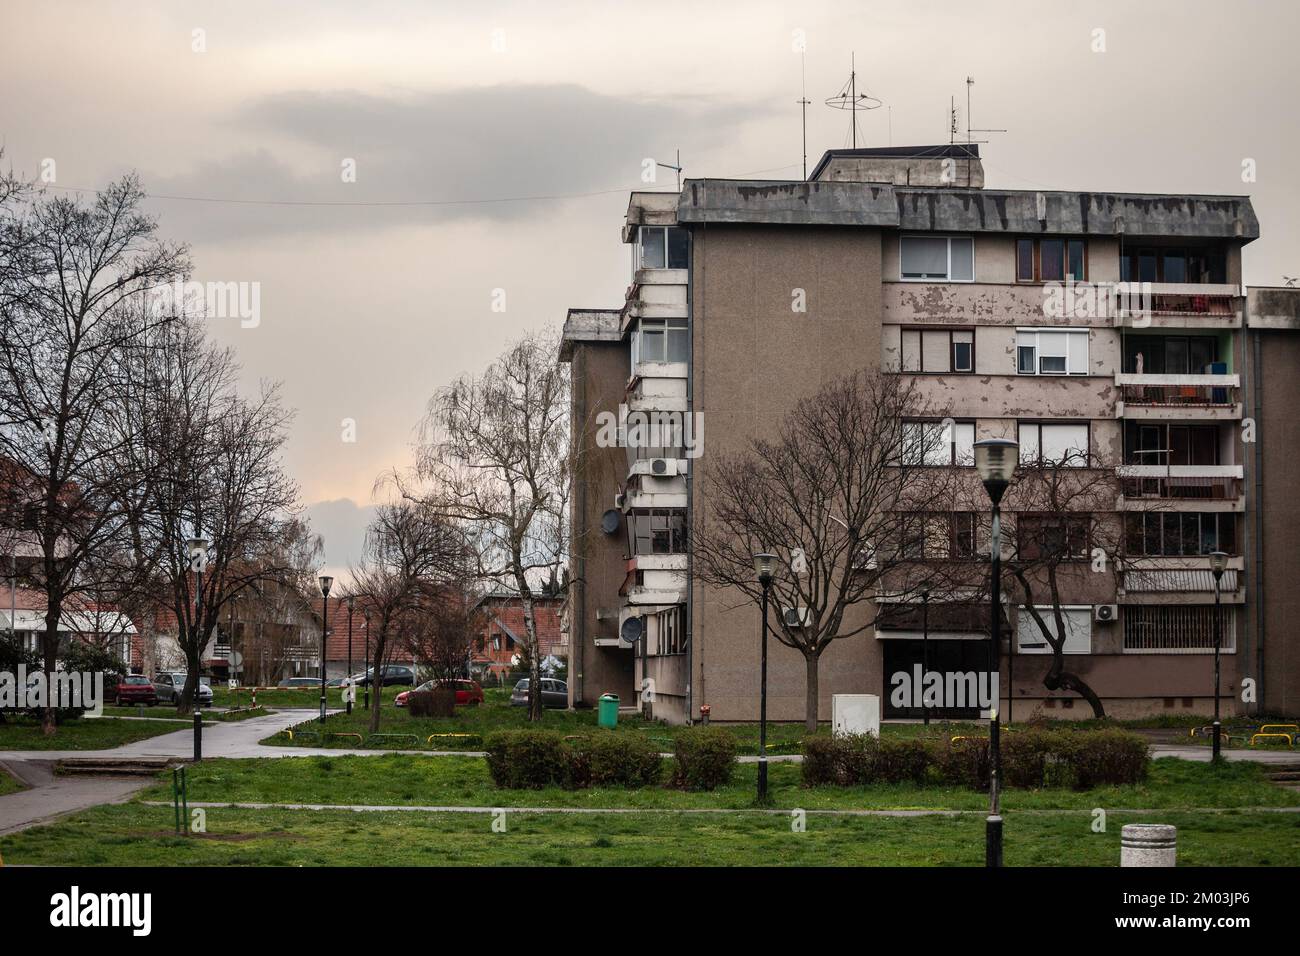 Imagen de edificios socialistas de Obrenovac durante una tarde lluviosa. Obrenovac es un municipio de la ciudad de Belgrado. Según el censu de 2011 Foto de stock